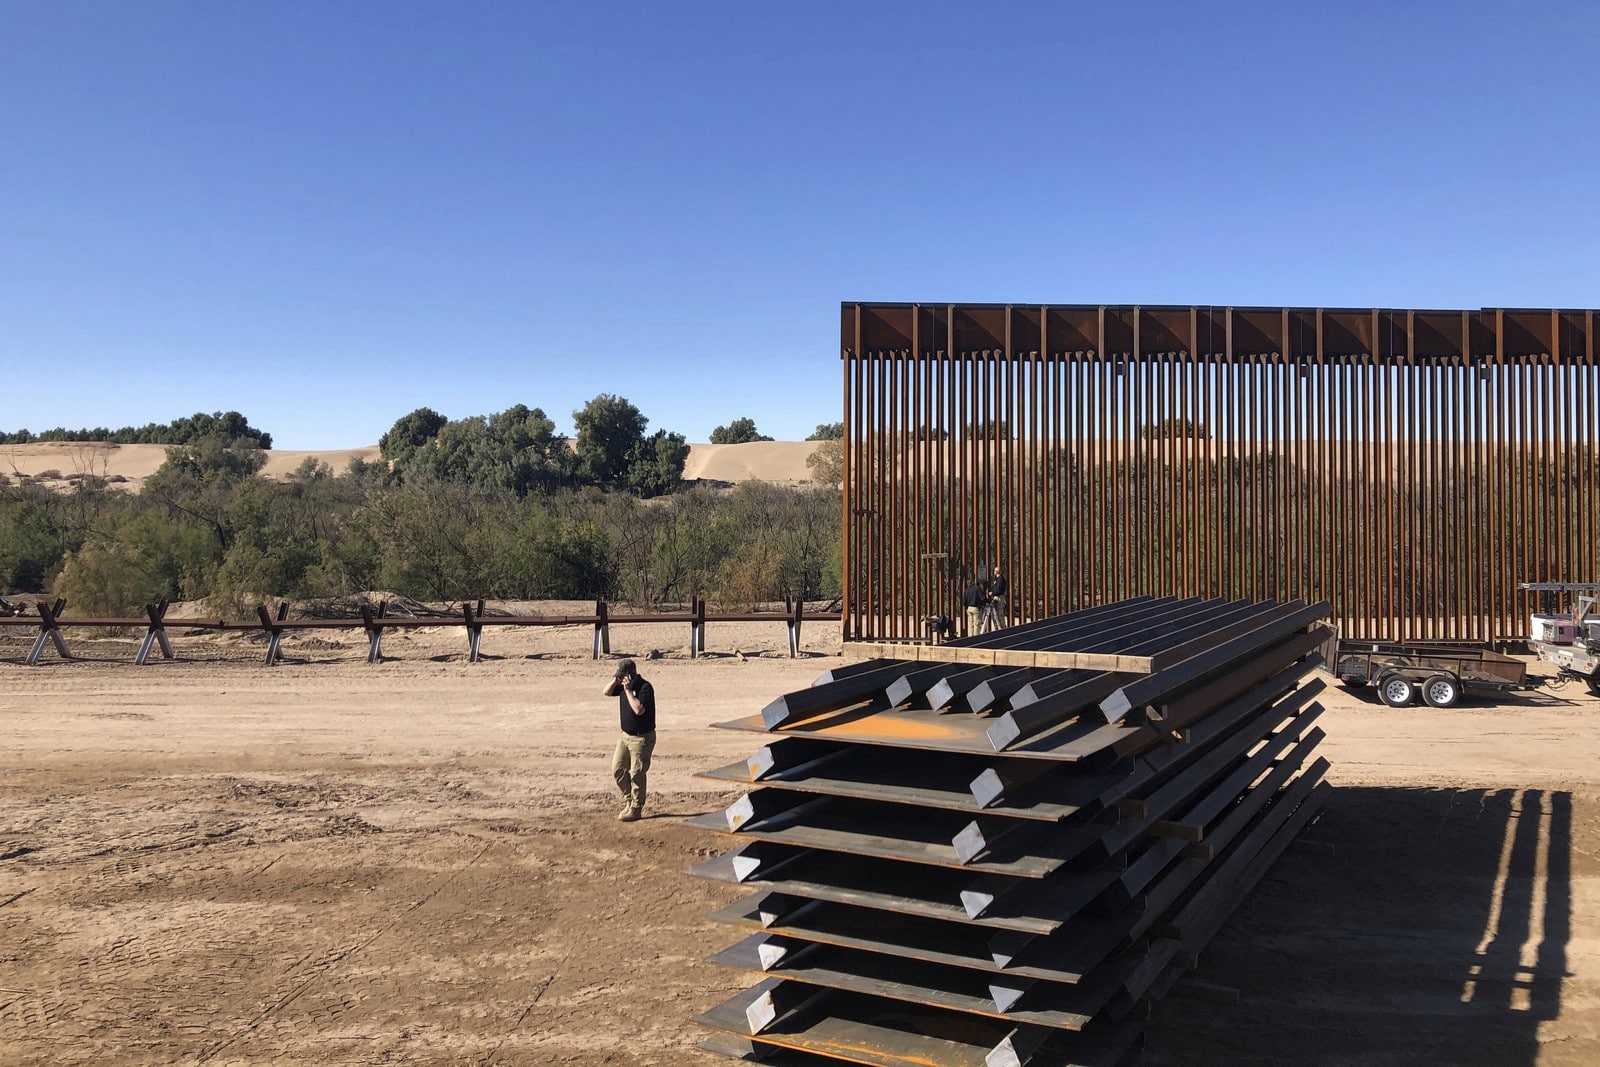 Janvier 2020 en Arizona, construction du mur frontalier avec le Mexique,
Auteurs  : Elliot Spagat/AP/SIPA,
Numéro de reportage  : AP22419749_000002.